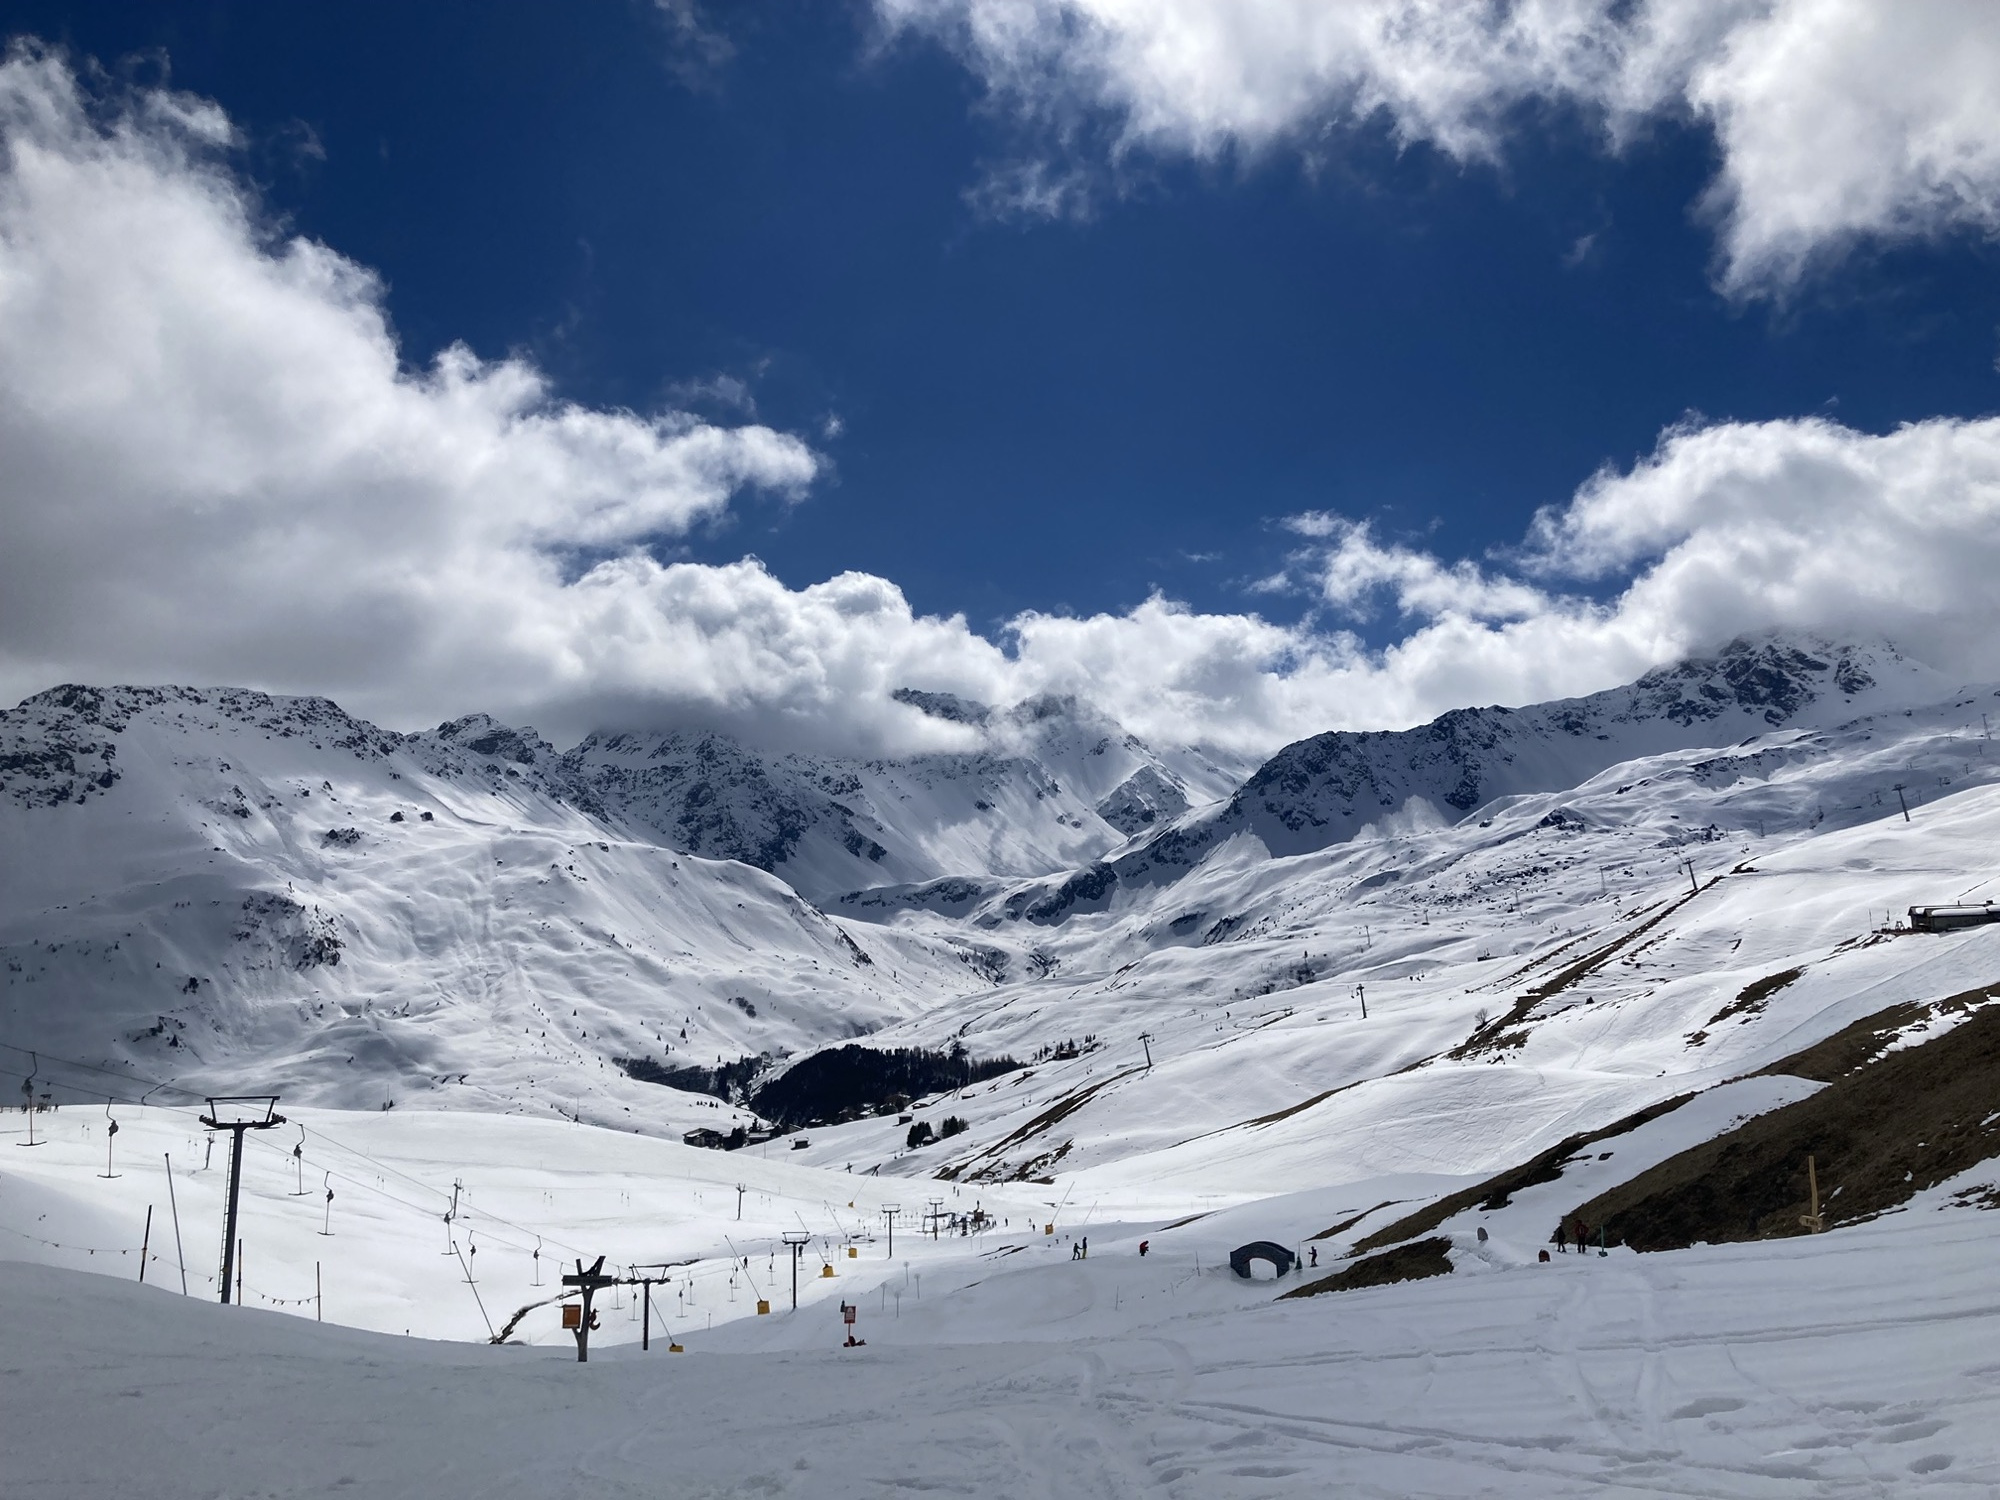 Skigebiet-Idylle, Blick in ein Tal mit mehreren Liftanlagen zwischen Skipisten, im Hintergrund wolkenverhangene Berggipfel vor strahlend blauem Himmel